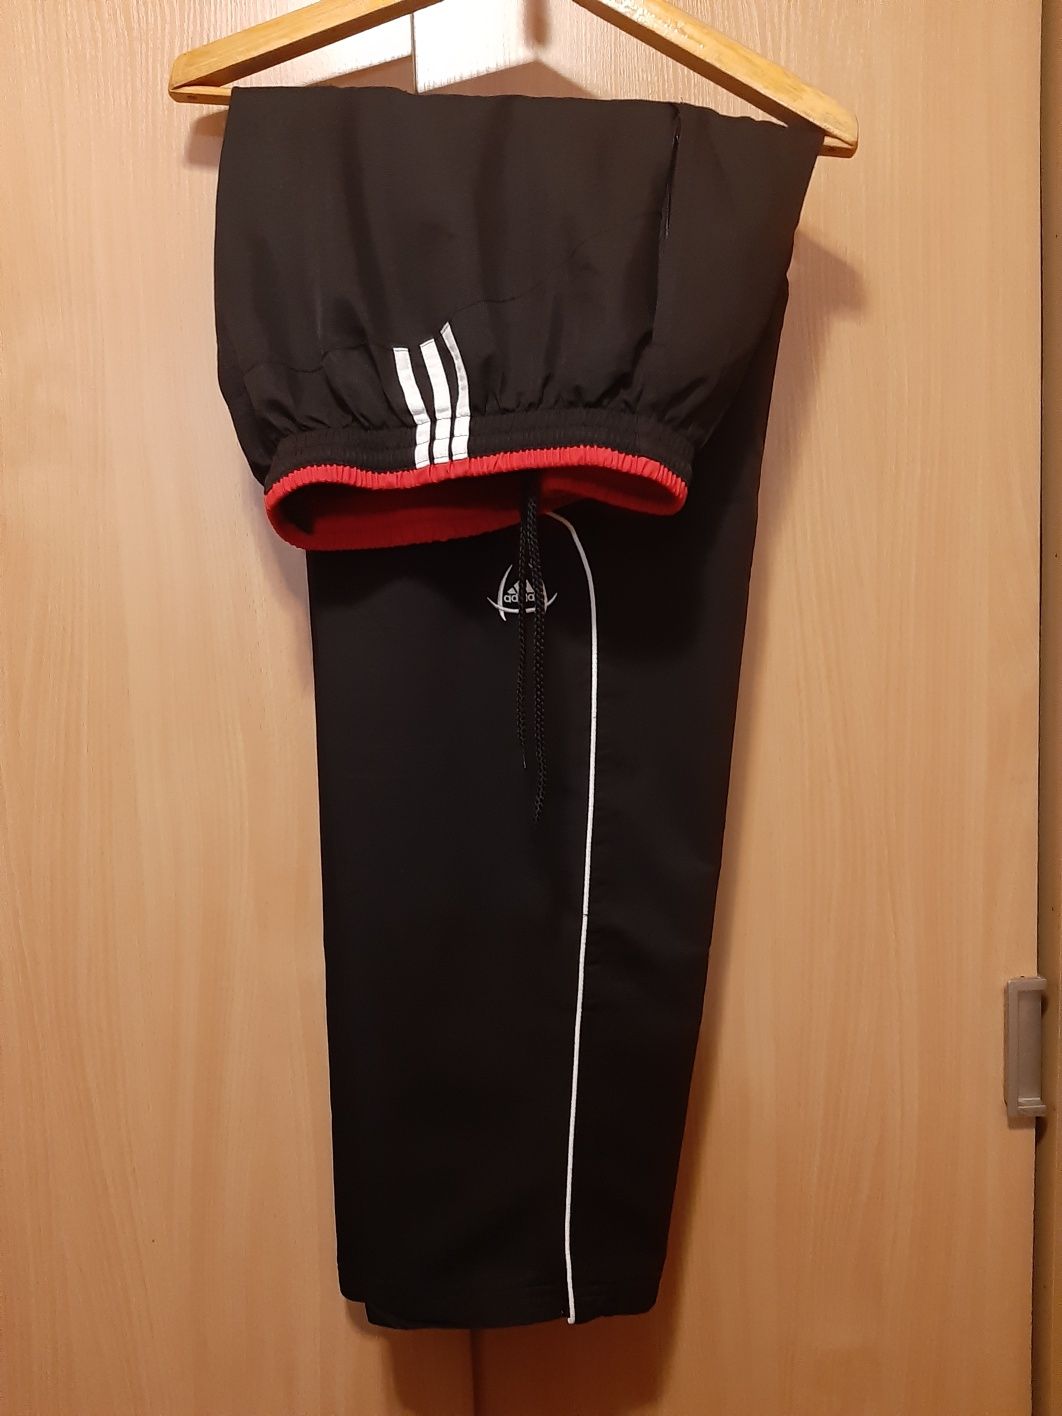 Мужской спортивный костюм Adidas р.60